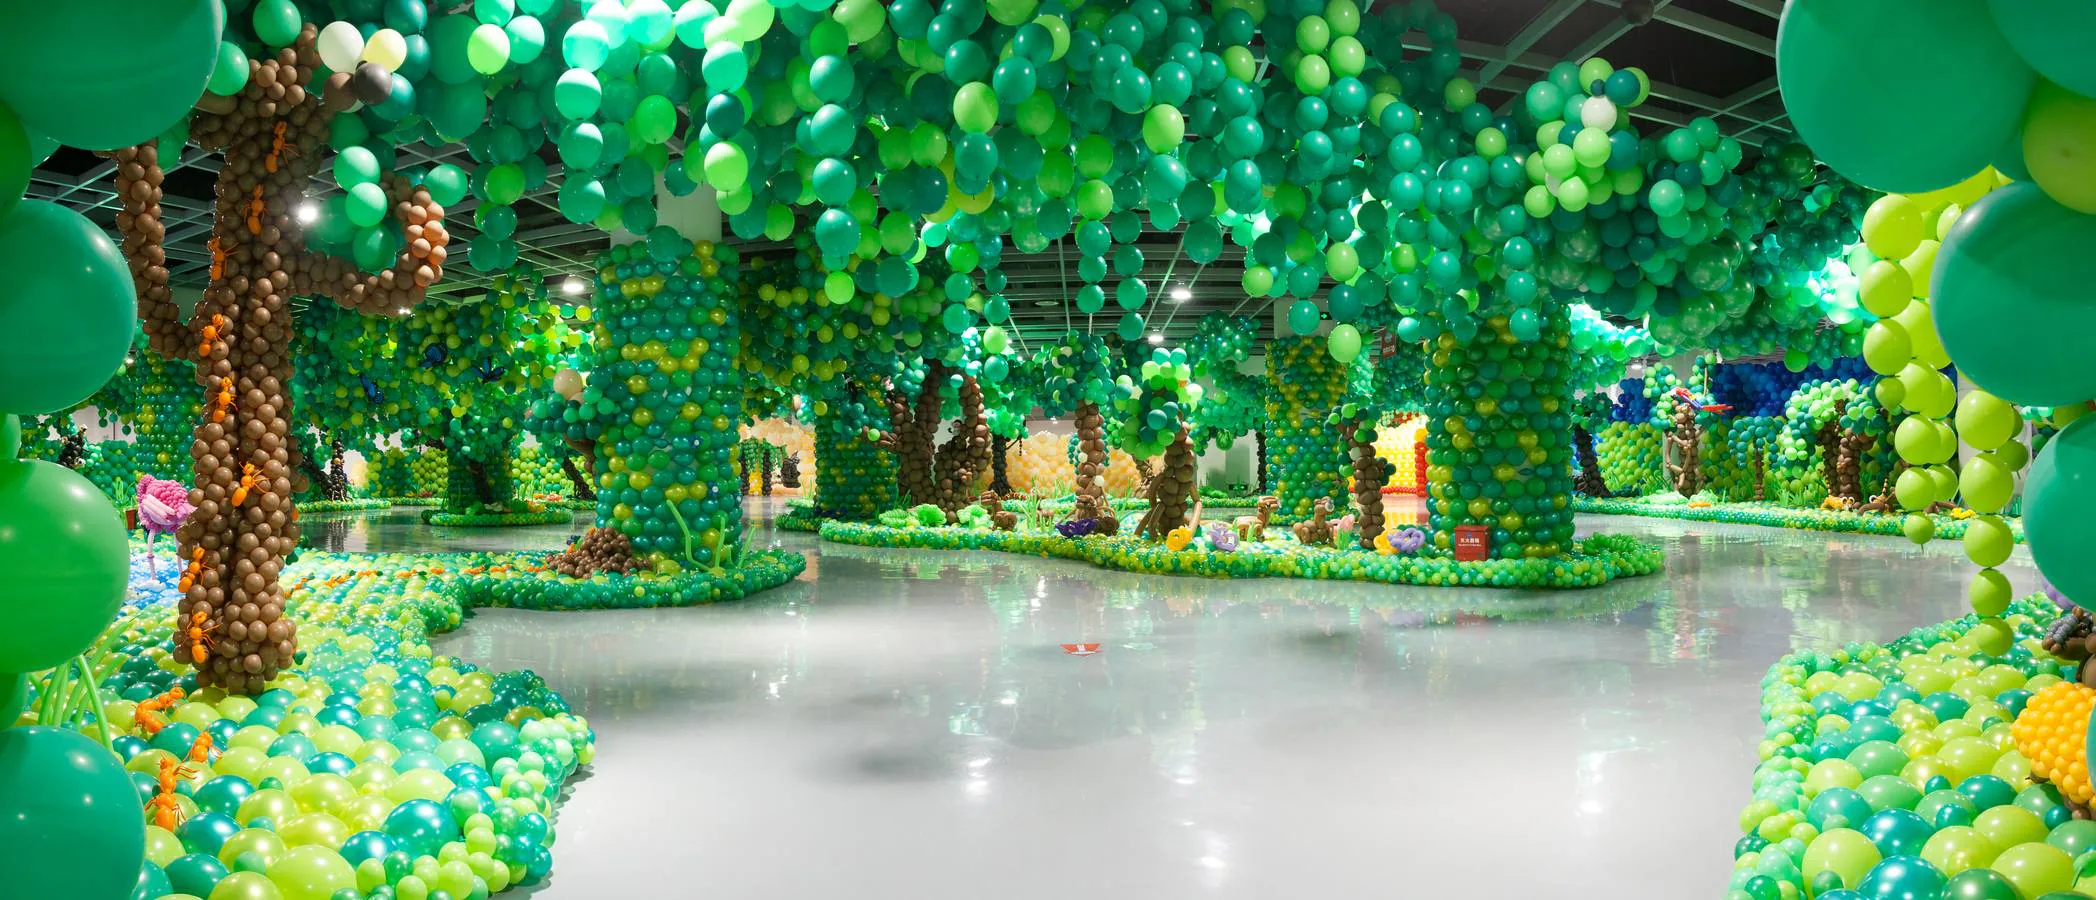 Las imágenes del zoológico hecho de globos que ha batido el Guinness